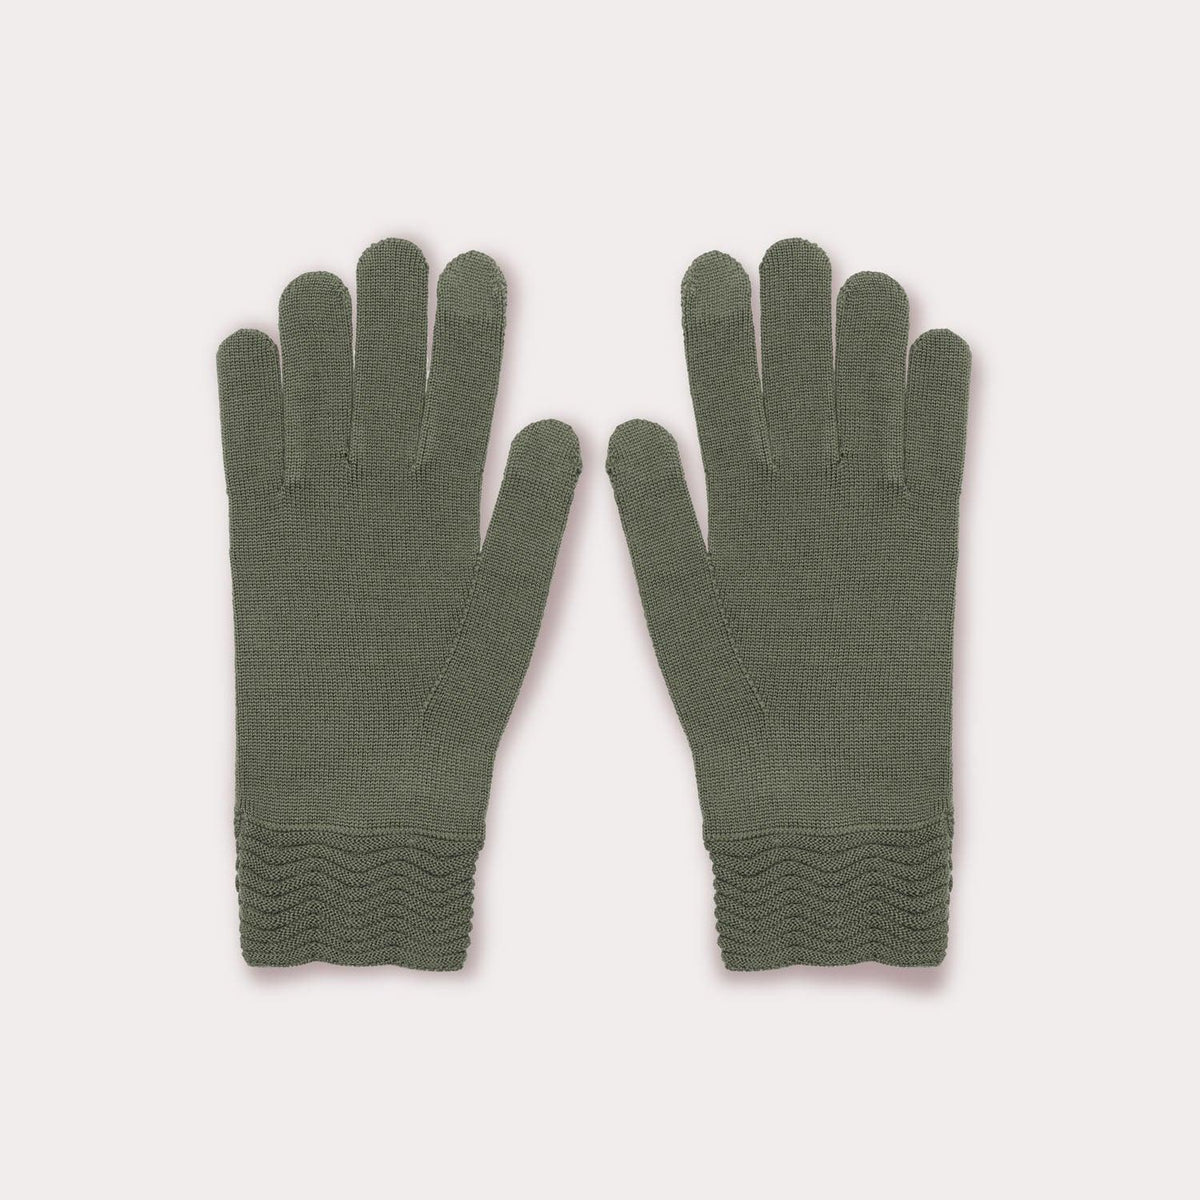 Green wool tech gallery gloves by Seymoure Gloves.